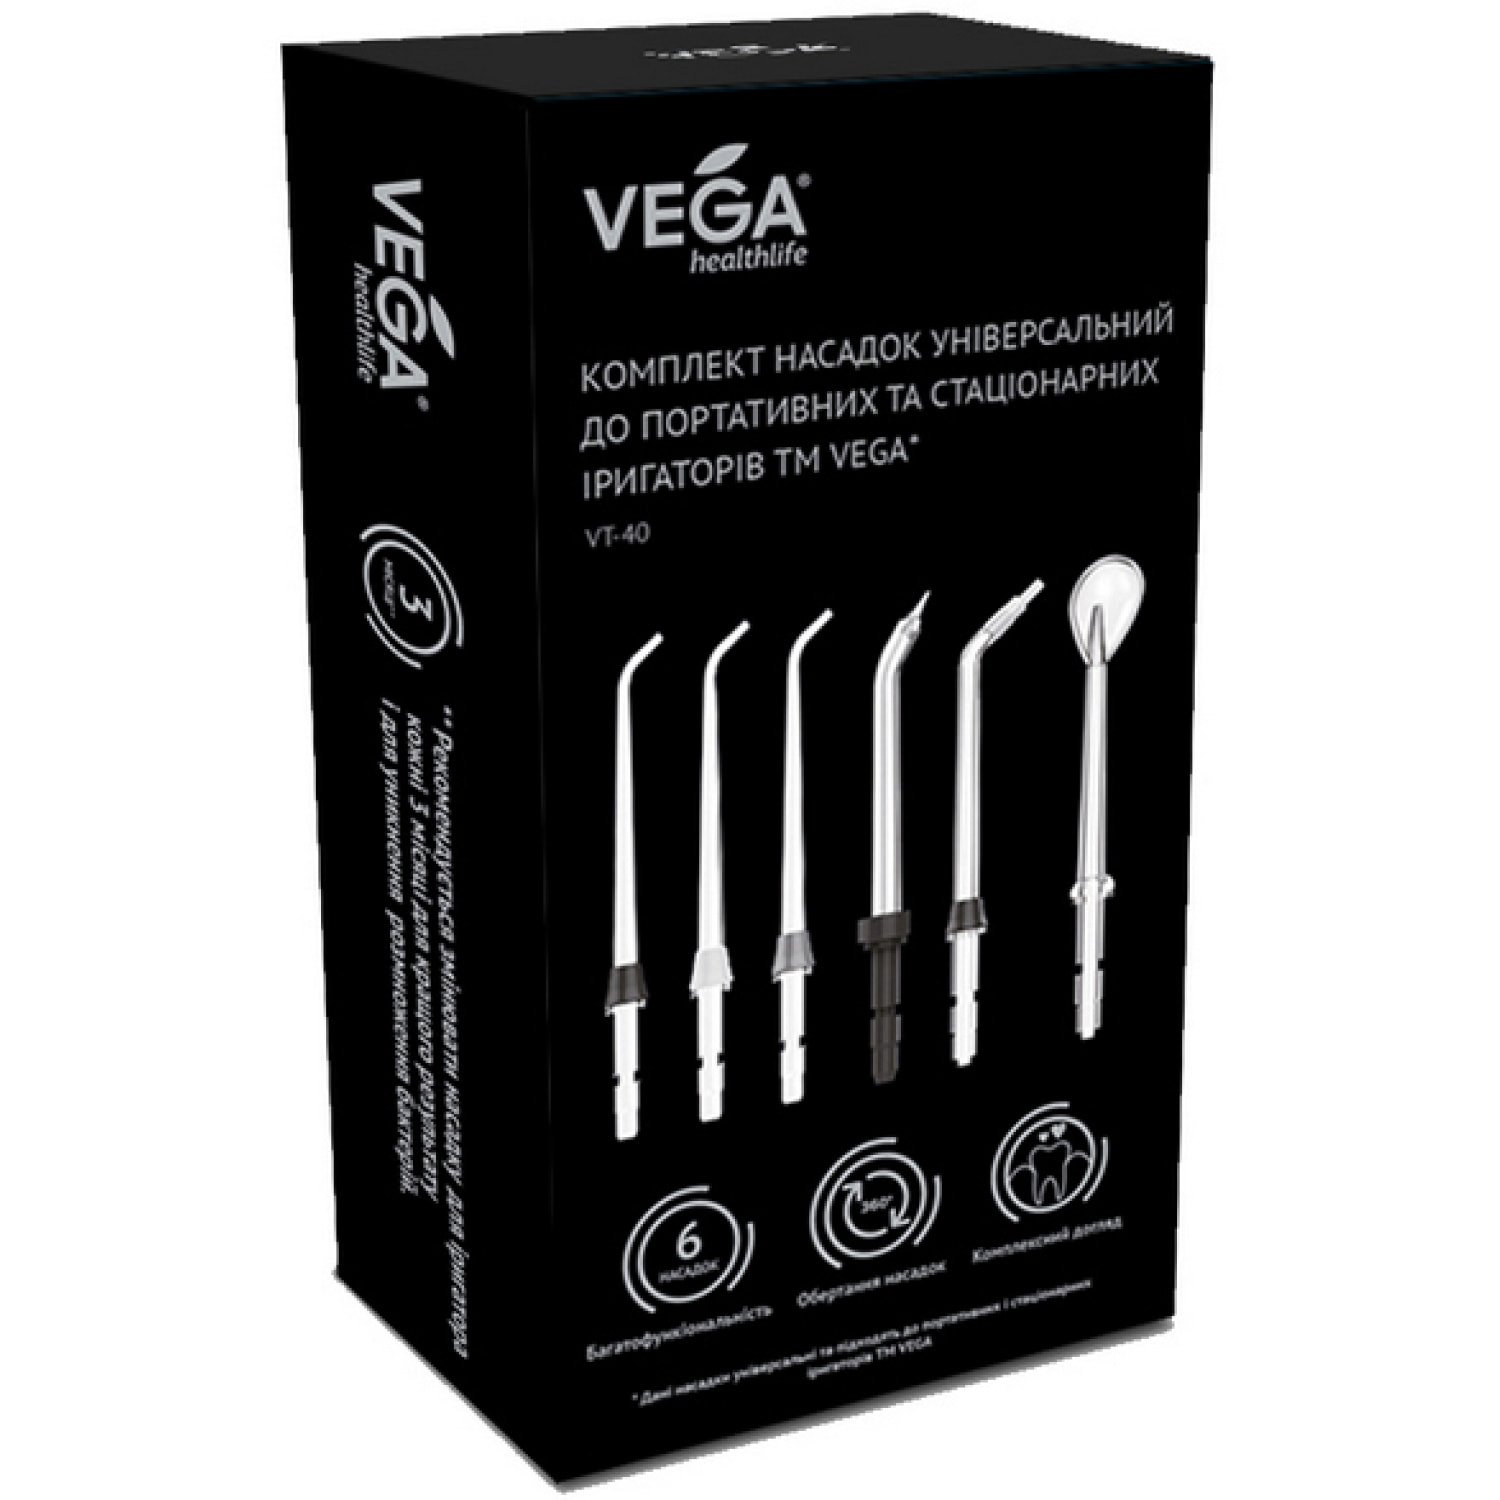 Комплект насадок Vega универсальный для портативных и стационарных ирригаторов (VT-40) - фото 1